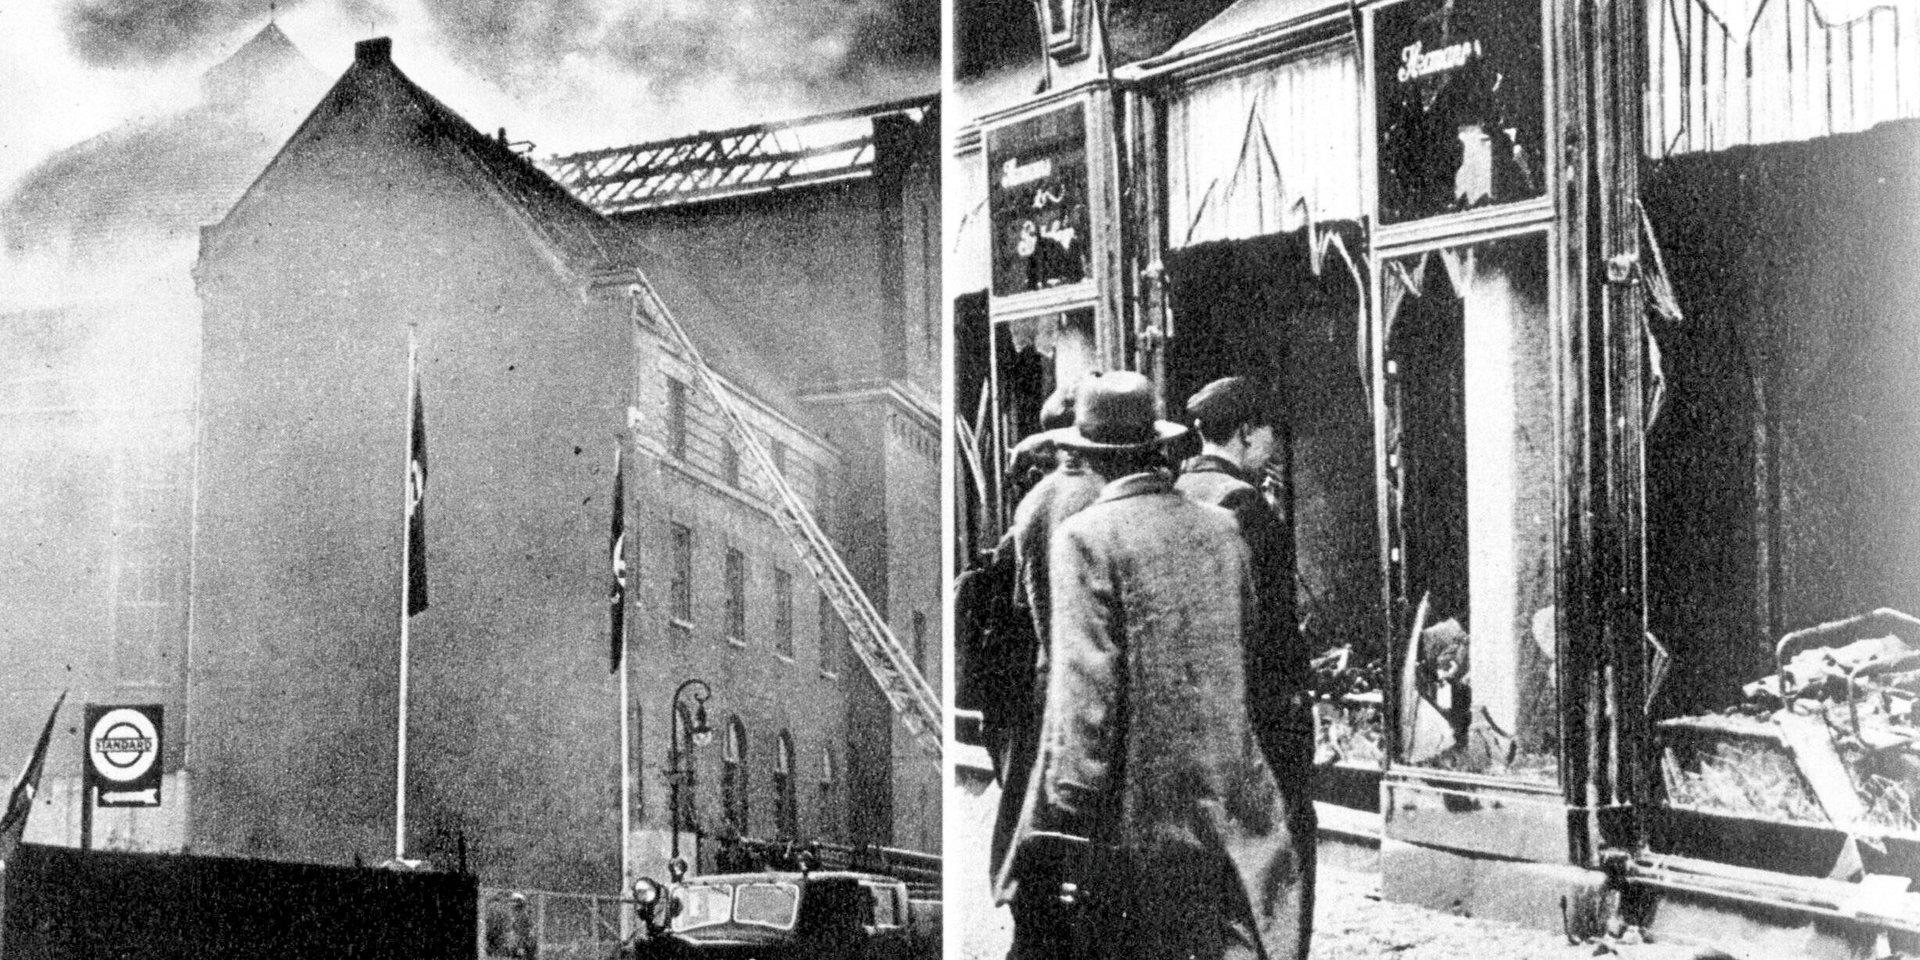 BERLIN 19381110
Kristallnatten 10 nov 1938. 
Bilden tv synagoga i Berlin brinner, och th krossade butiksfönster i judiska affärer i Berlin.
FLT-PICA kOD 20360